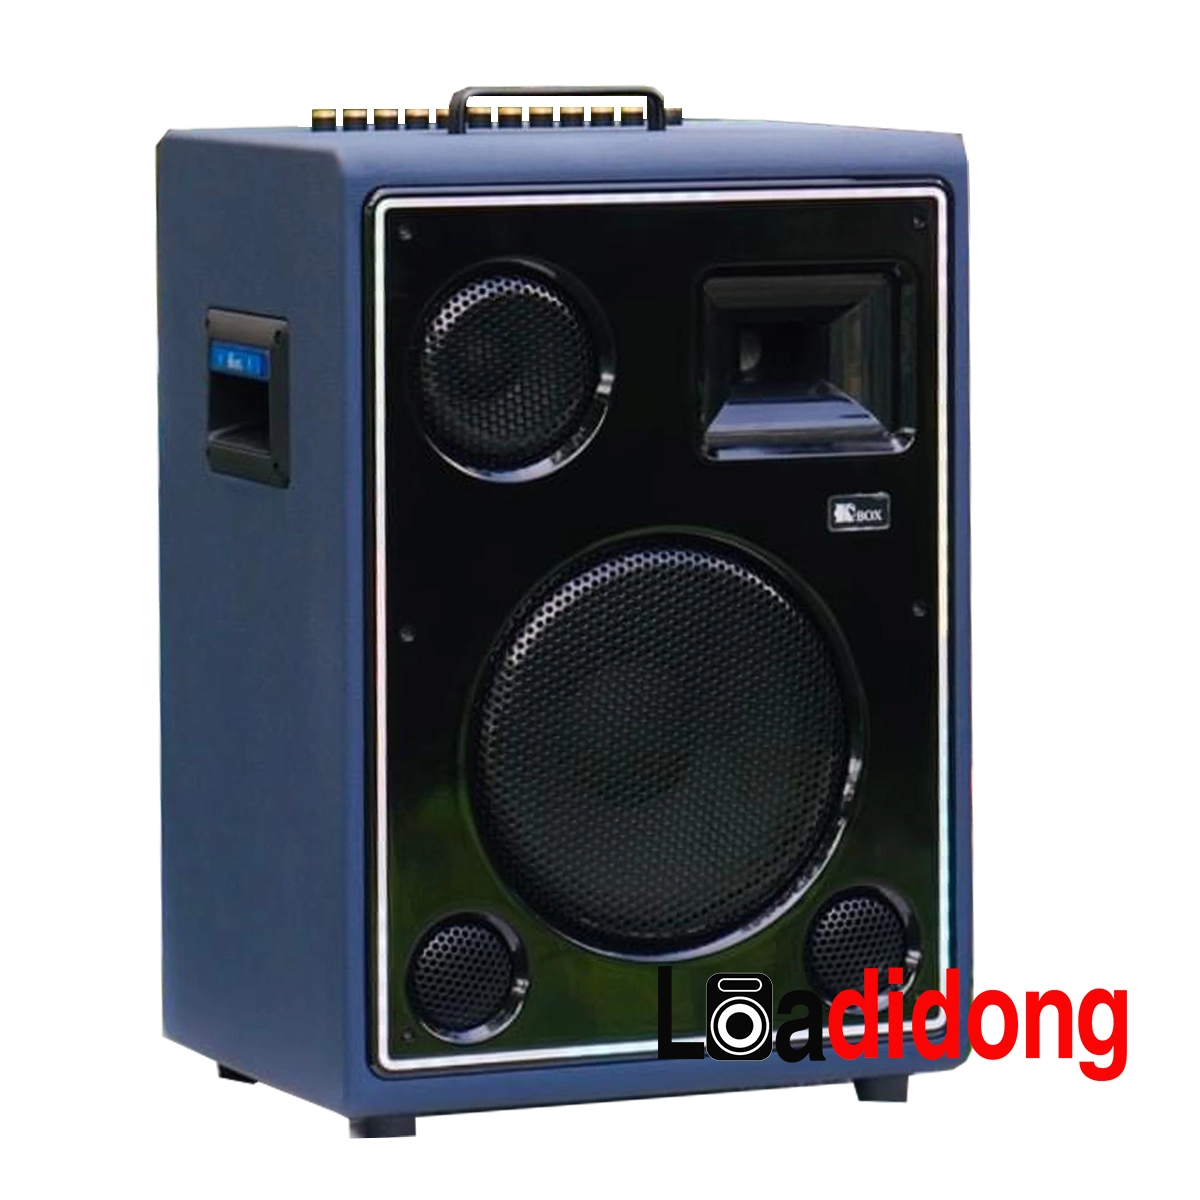 Loa Kcbox 450 Pro Mới Nhất 2023 - Chất Lượng - Giá Rẻ